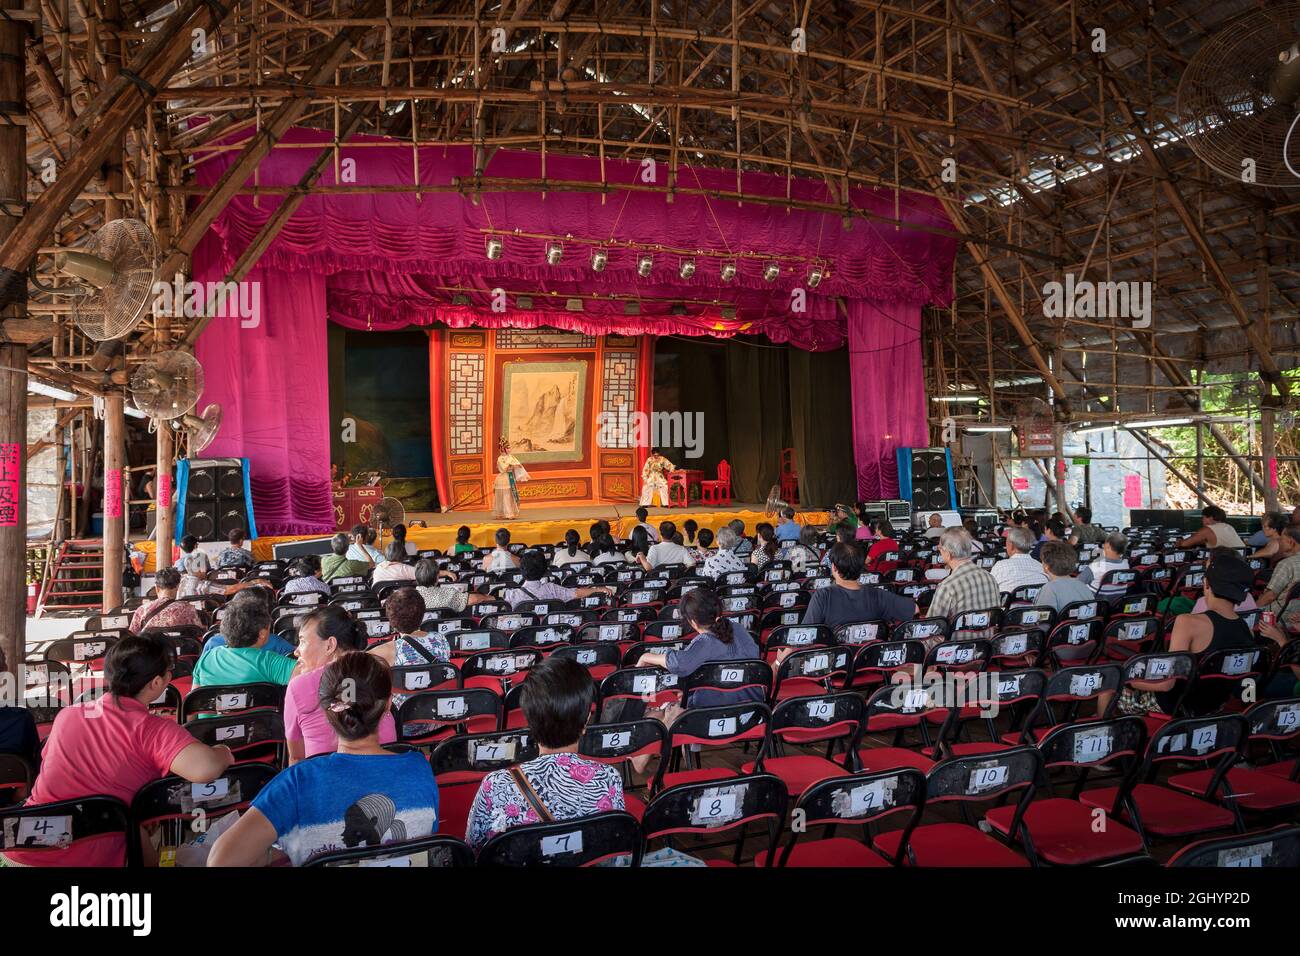 Ein temporärer Konzertsaal für Aufführungen chinesischer Oper, der komplett aus Bambus auf Peng Chau, einer abgelegenen Insel Hongkongs, gebaut wurde Stockfoto